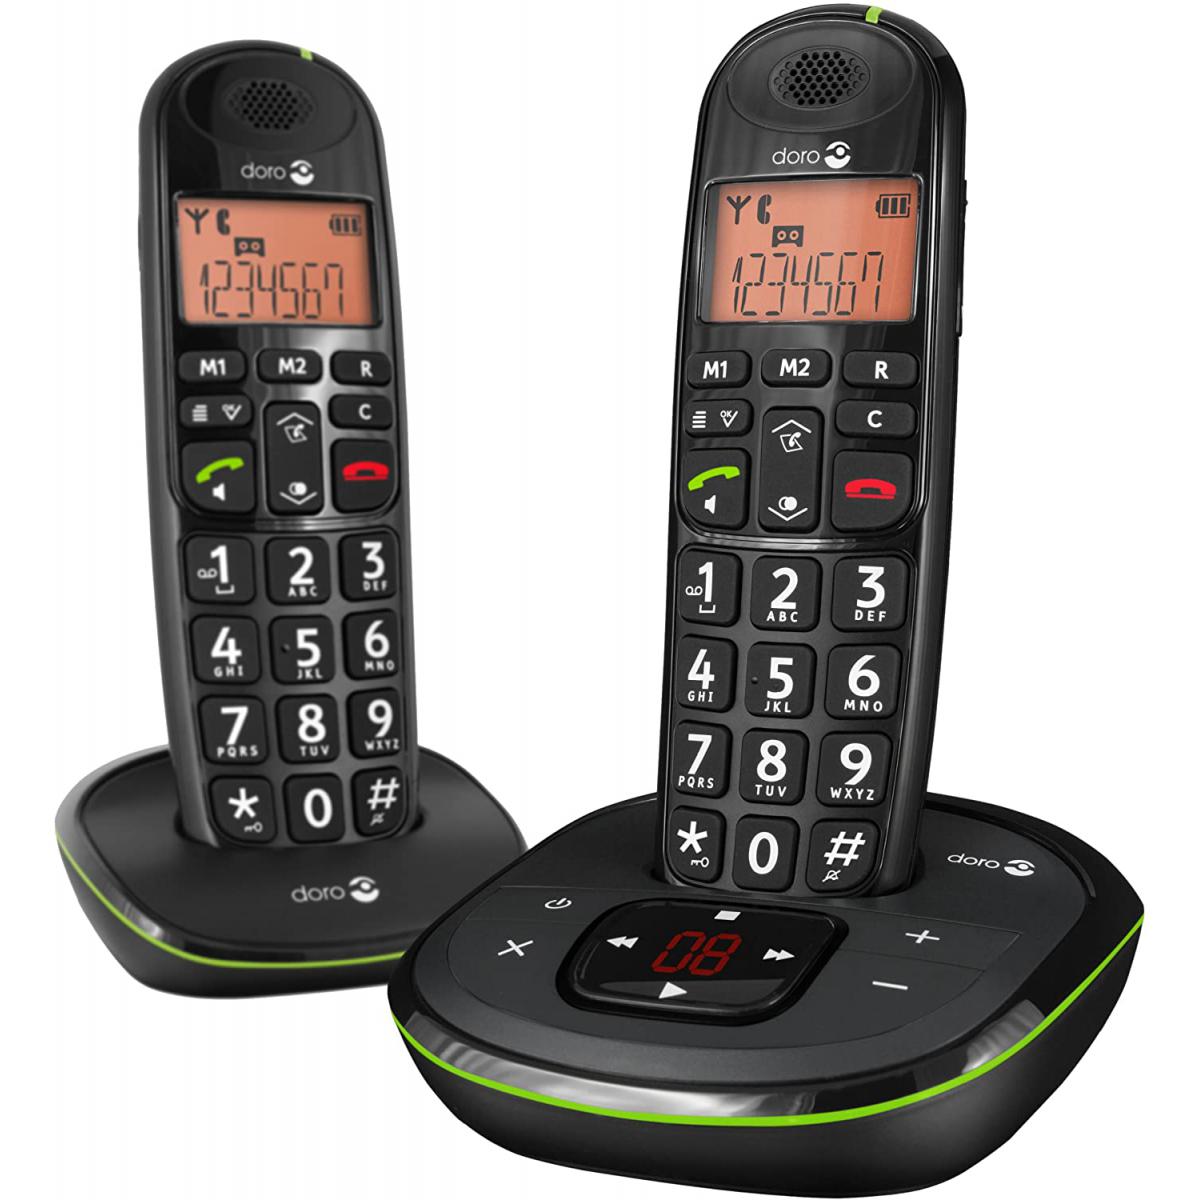 Doro - telephone Sans fil avec répondeur et écran noir vert - Téléphone fixe-répondeur